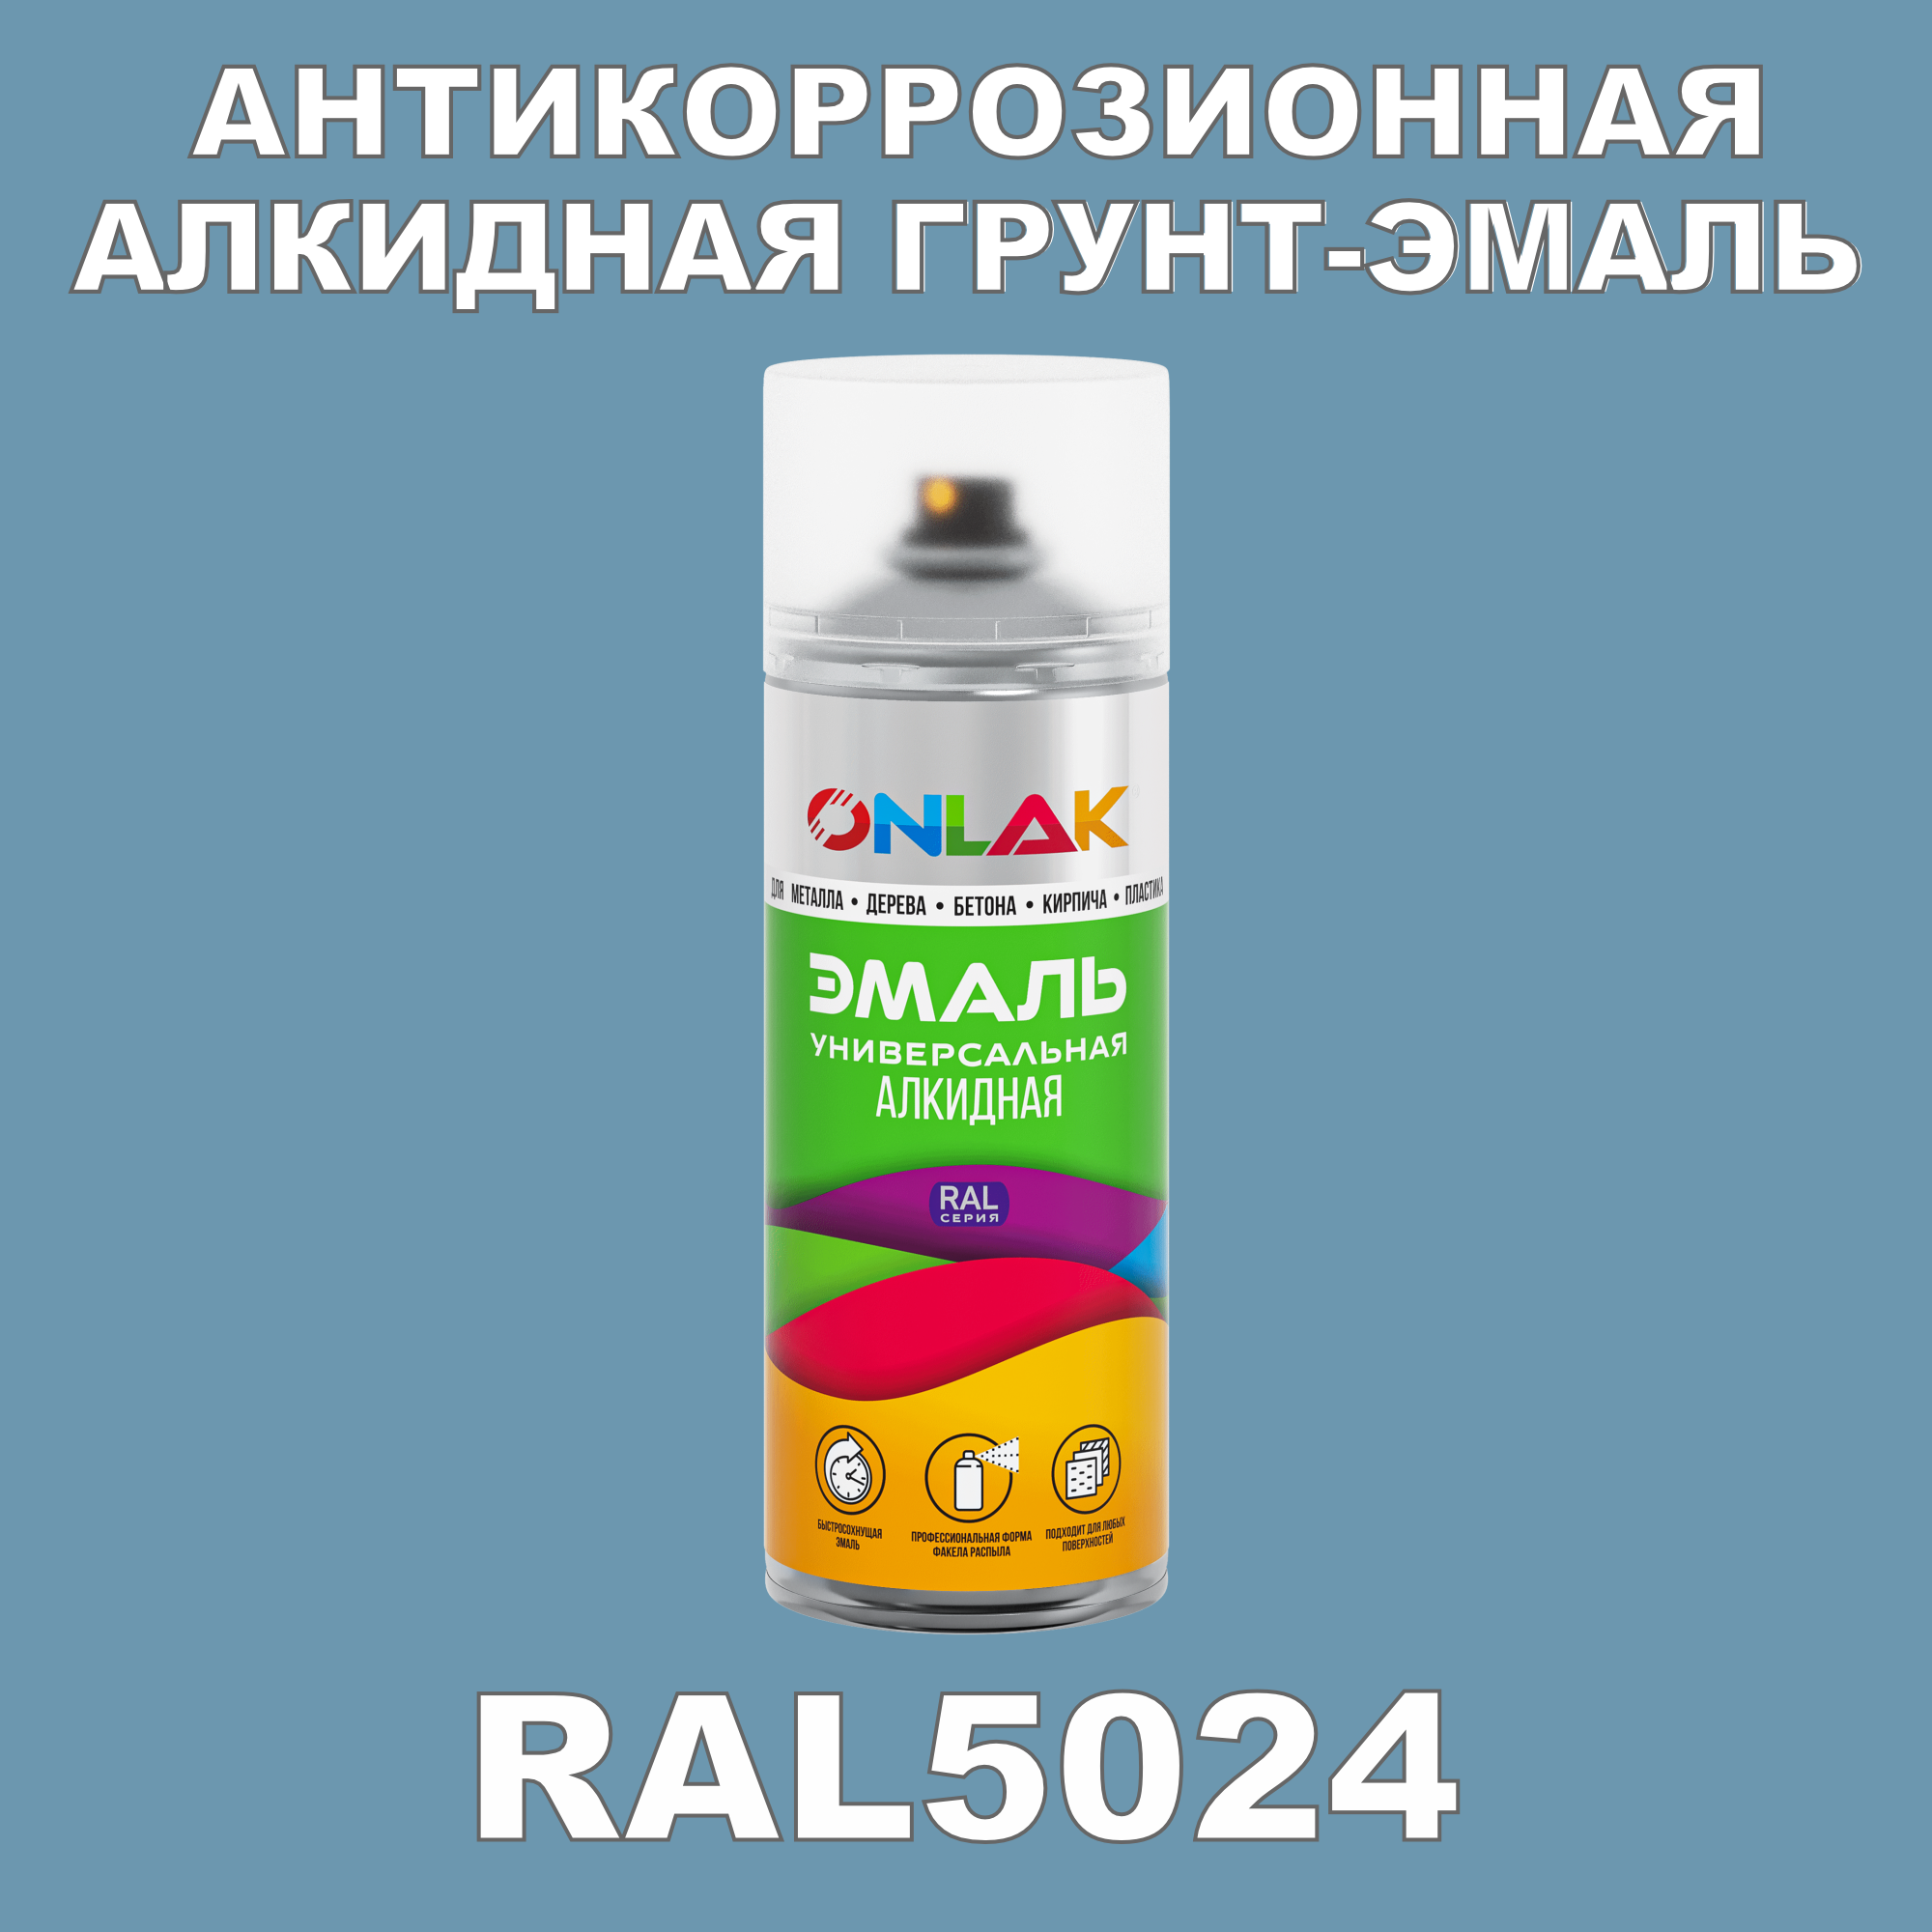 Антикоррозионная грунт-эмаль ONLAK RAL5024 полуматовая для металла и защиты от ржавчины